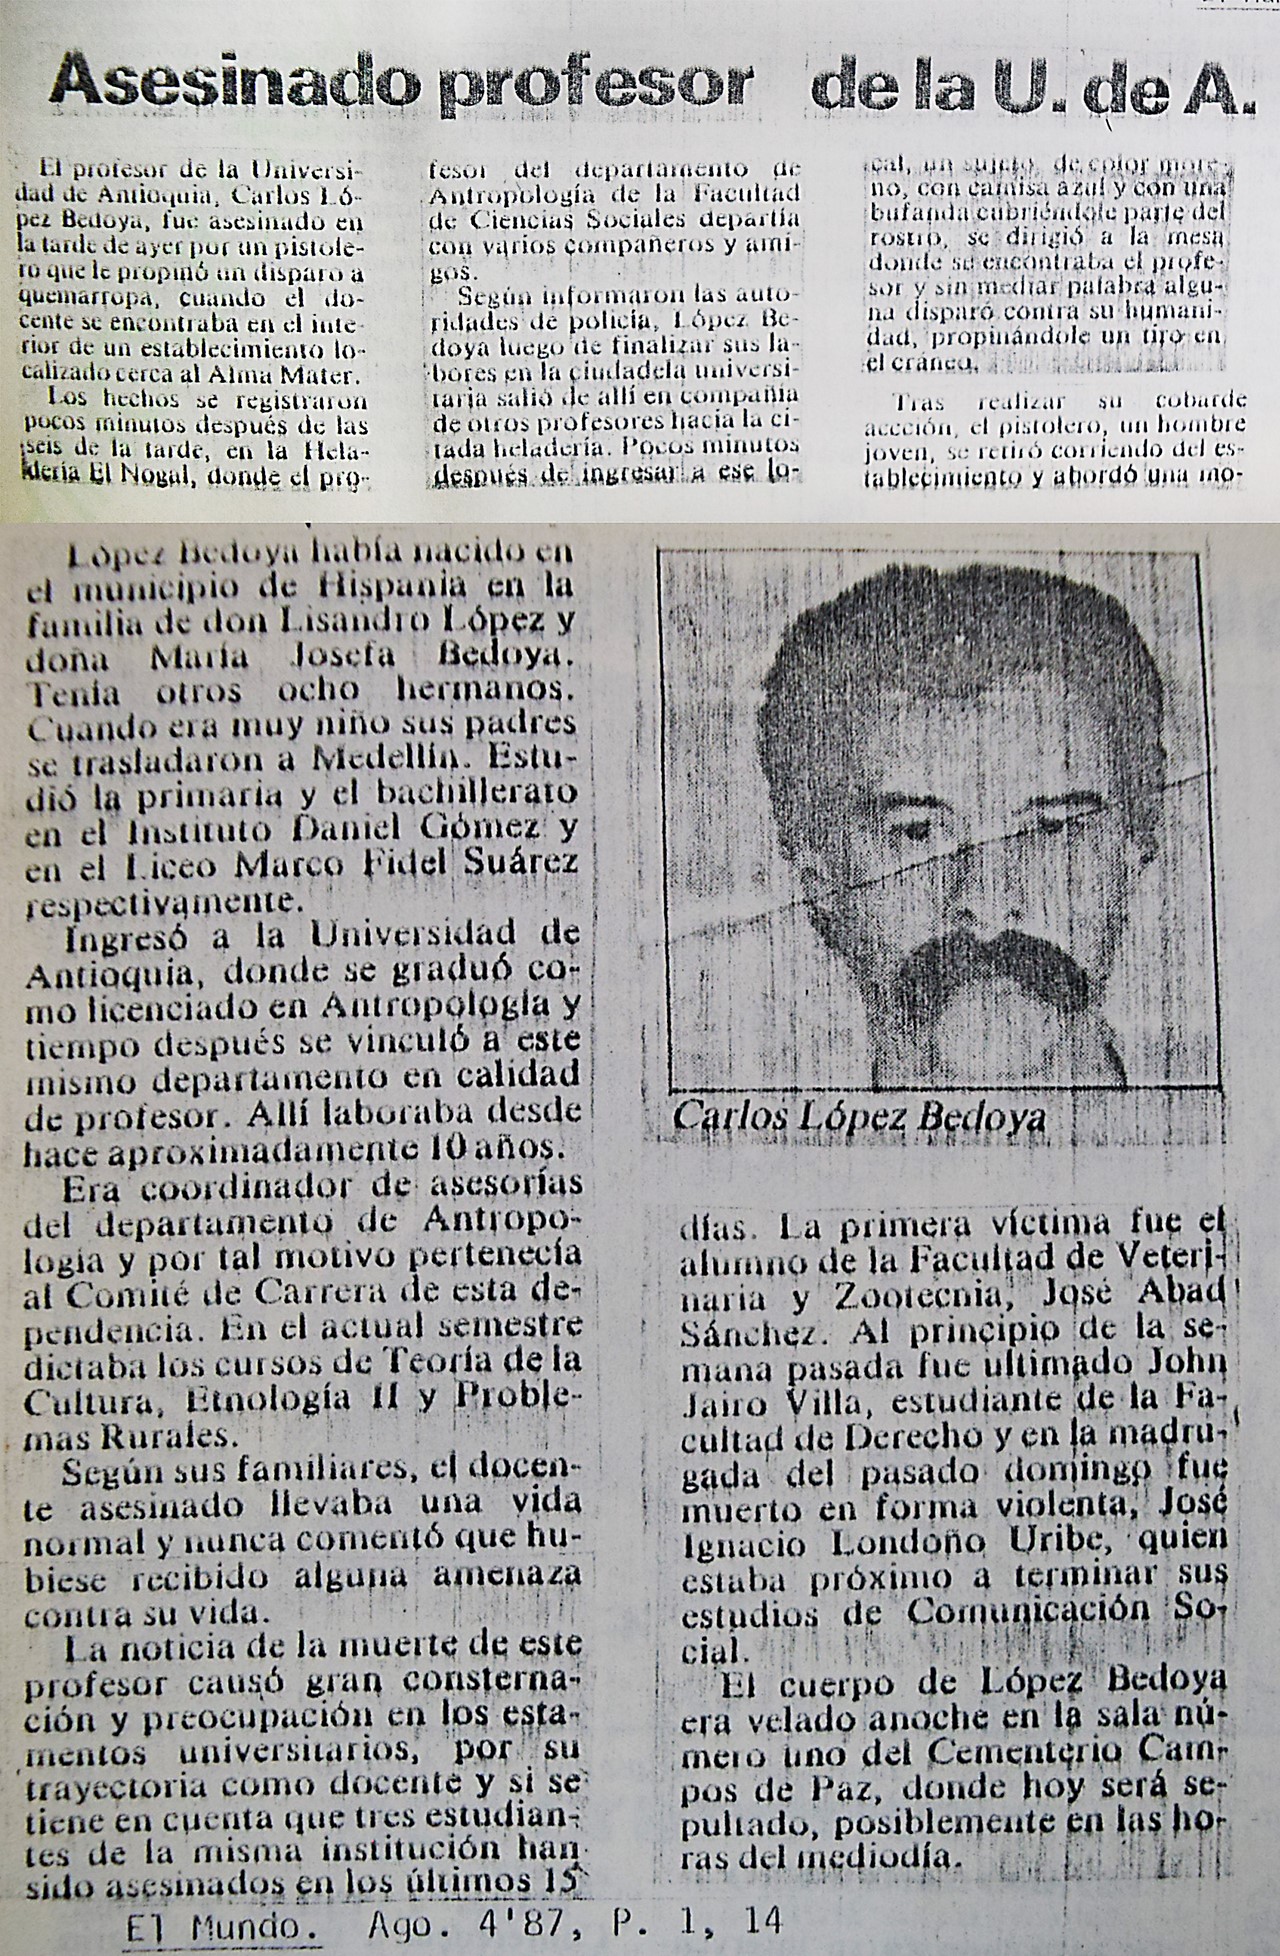 Imágenes vía El Colombiano y Archivo de Prensa de la Secretaría General de la Universidad de Antioquia